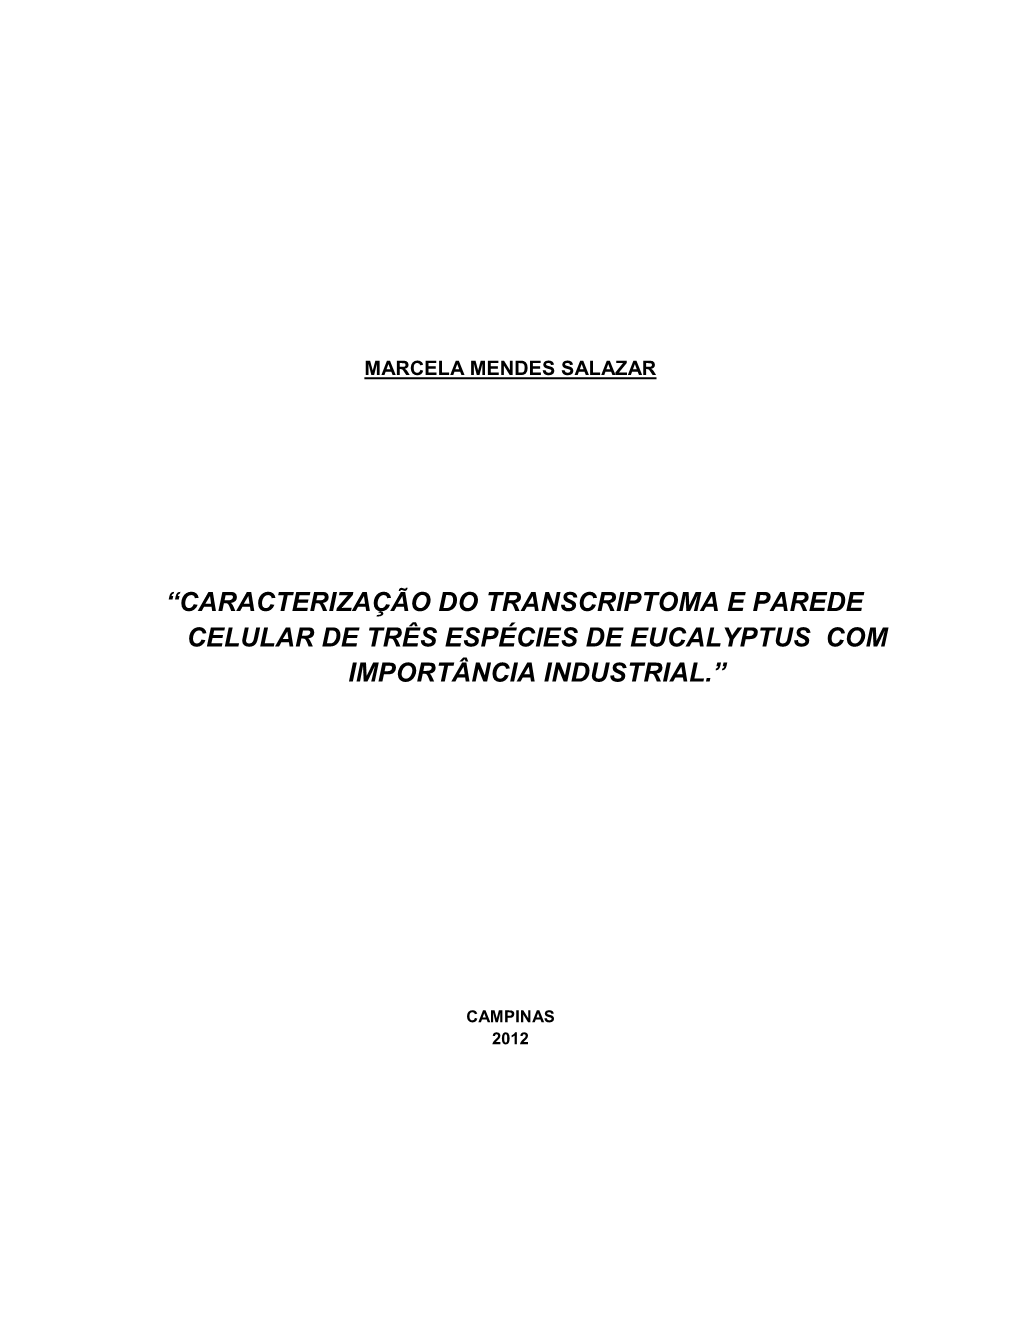 Caracterização Do Transcriptoma E Parede Celular De Três Espécies De Eucalyptus Com Importância Industrial.”